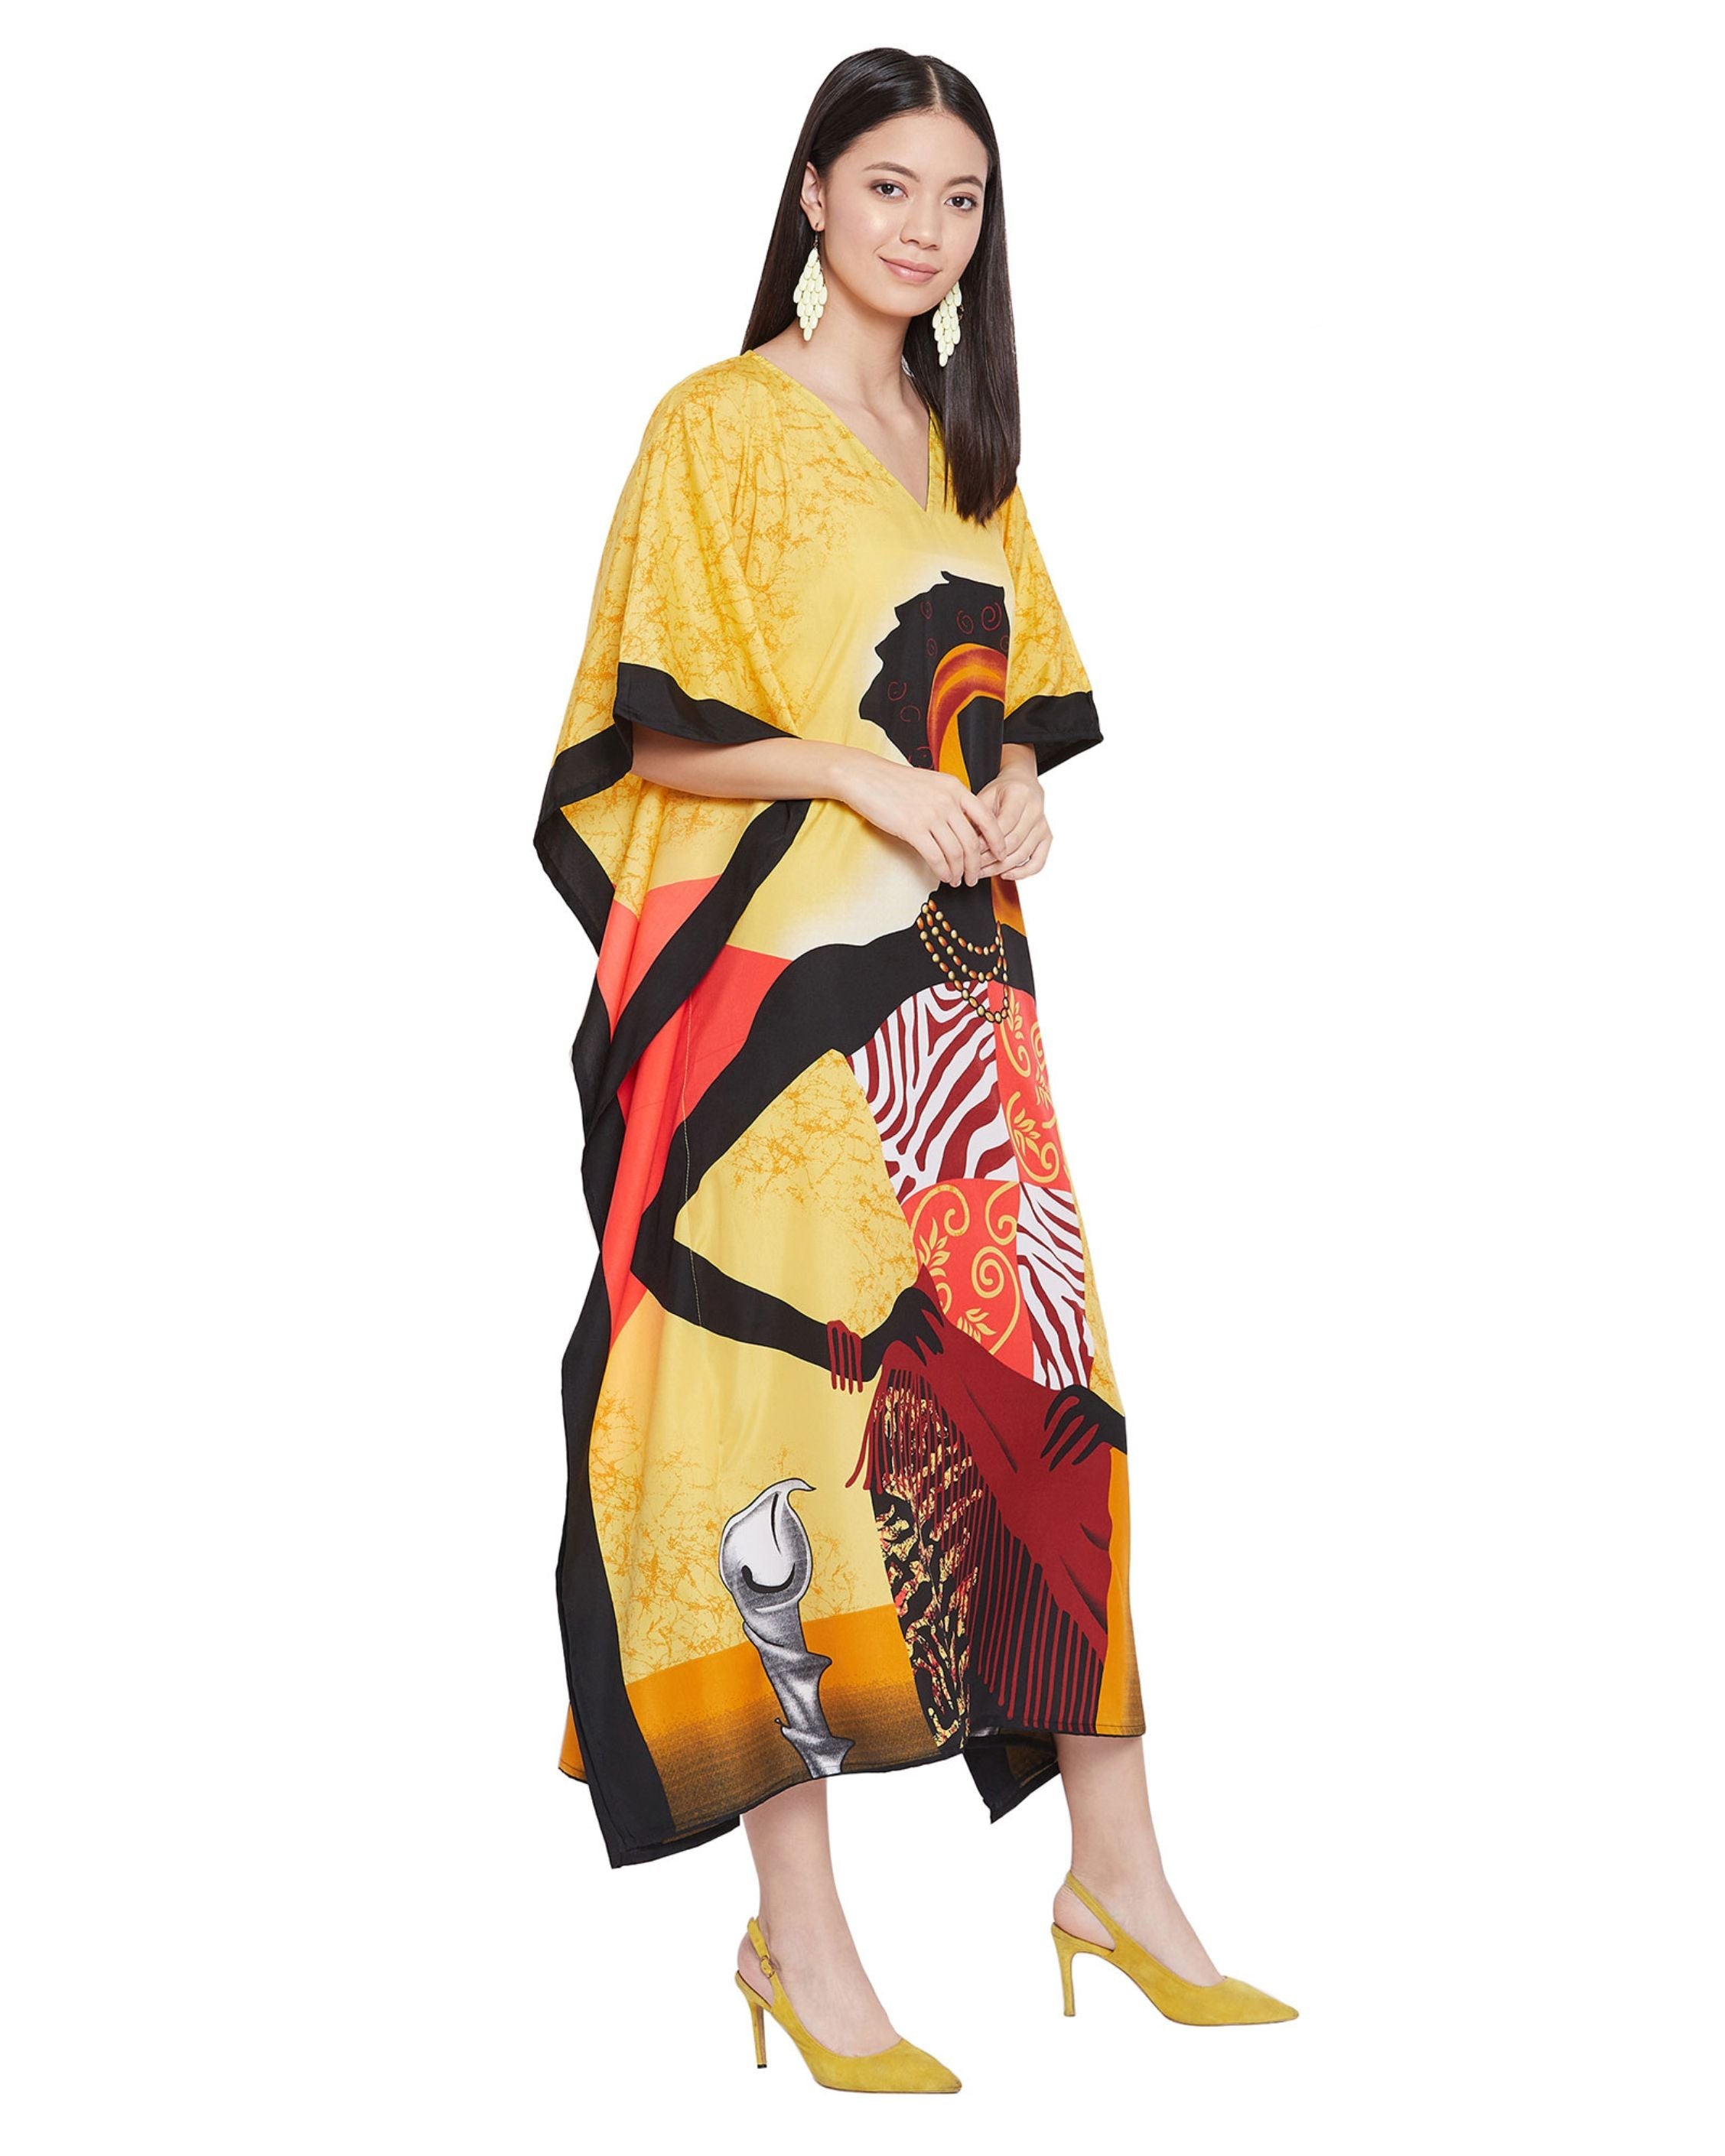 Tribal Printed Golden Polyester Kaftan Dress for Women